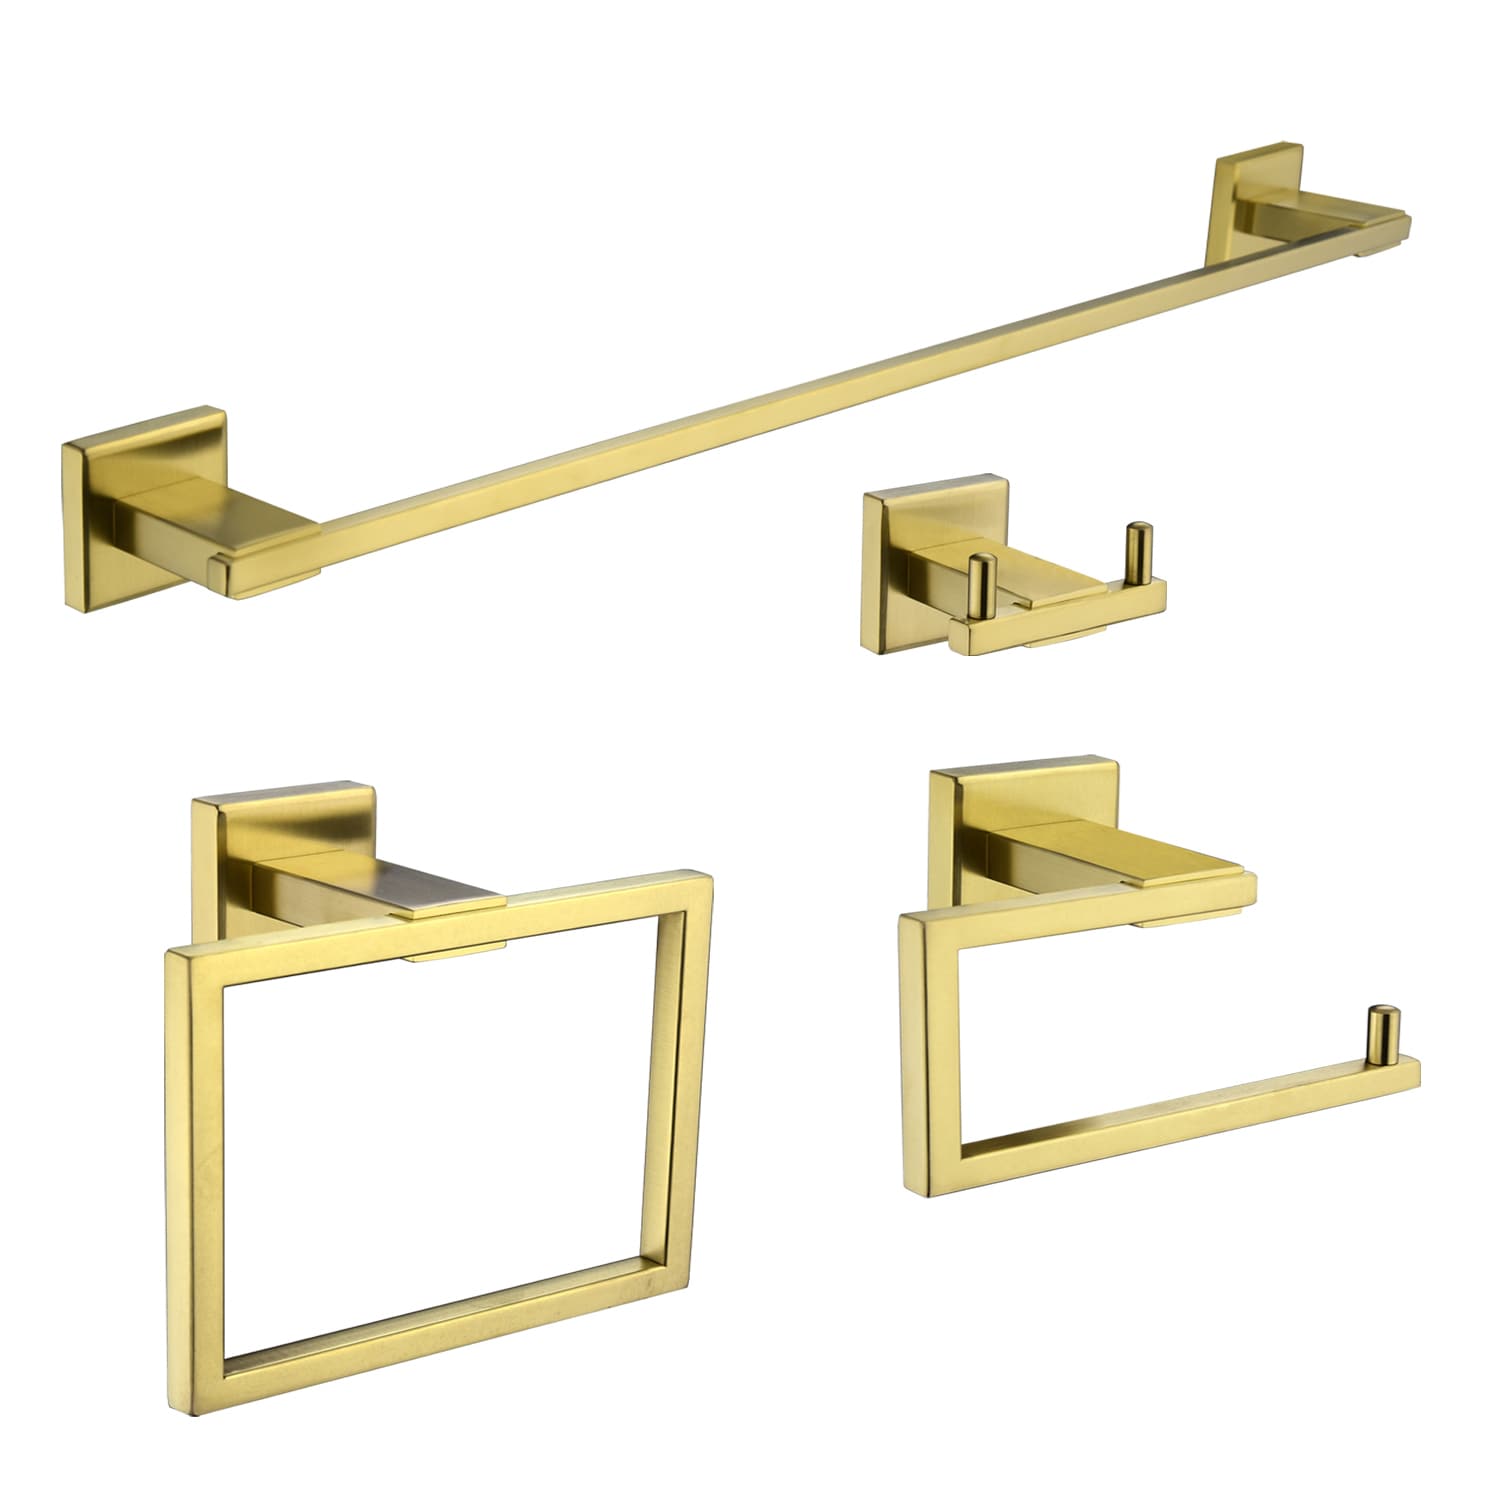 4 Piece Antique Brass Gold Bathroom Accessories Set - Brass 24” Double  Towel Bar Set, Antique Bar Brass Bath Accessories - Wall Mounted Brass  Bathroom